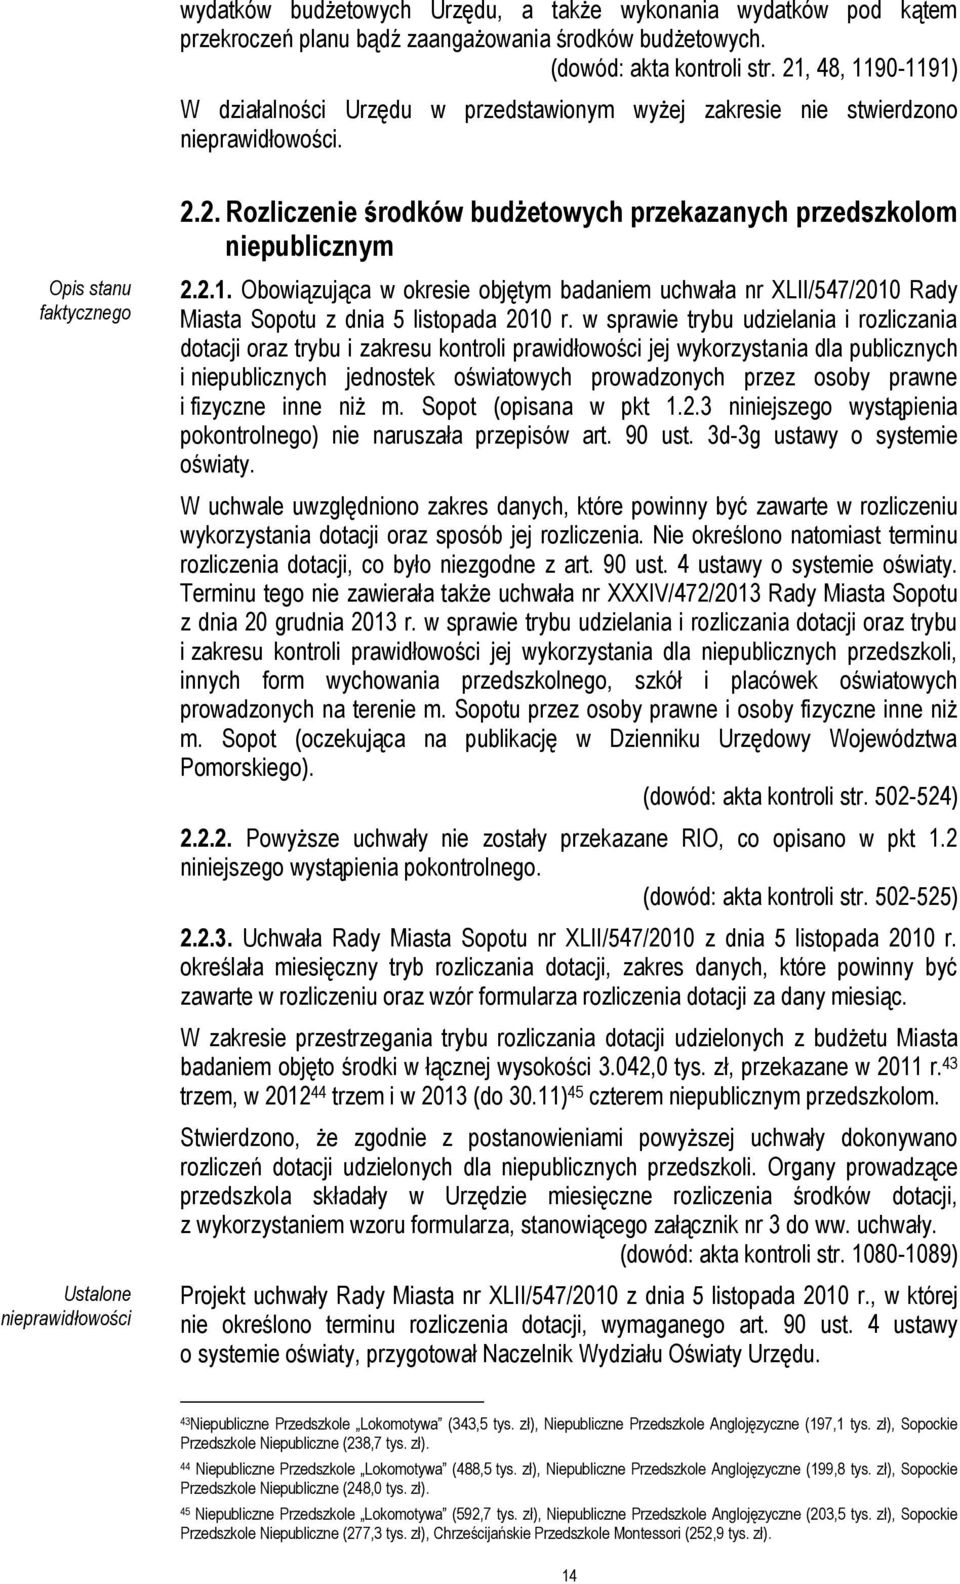 2.1. Obowiązująca w okresie objętym badaniem uchwała nr XLII/547/2010 Rady Miasta Sopotu z dnia 5 listopada 2010 r.